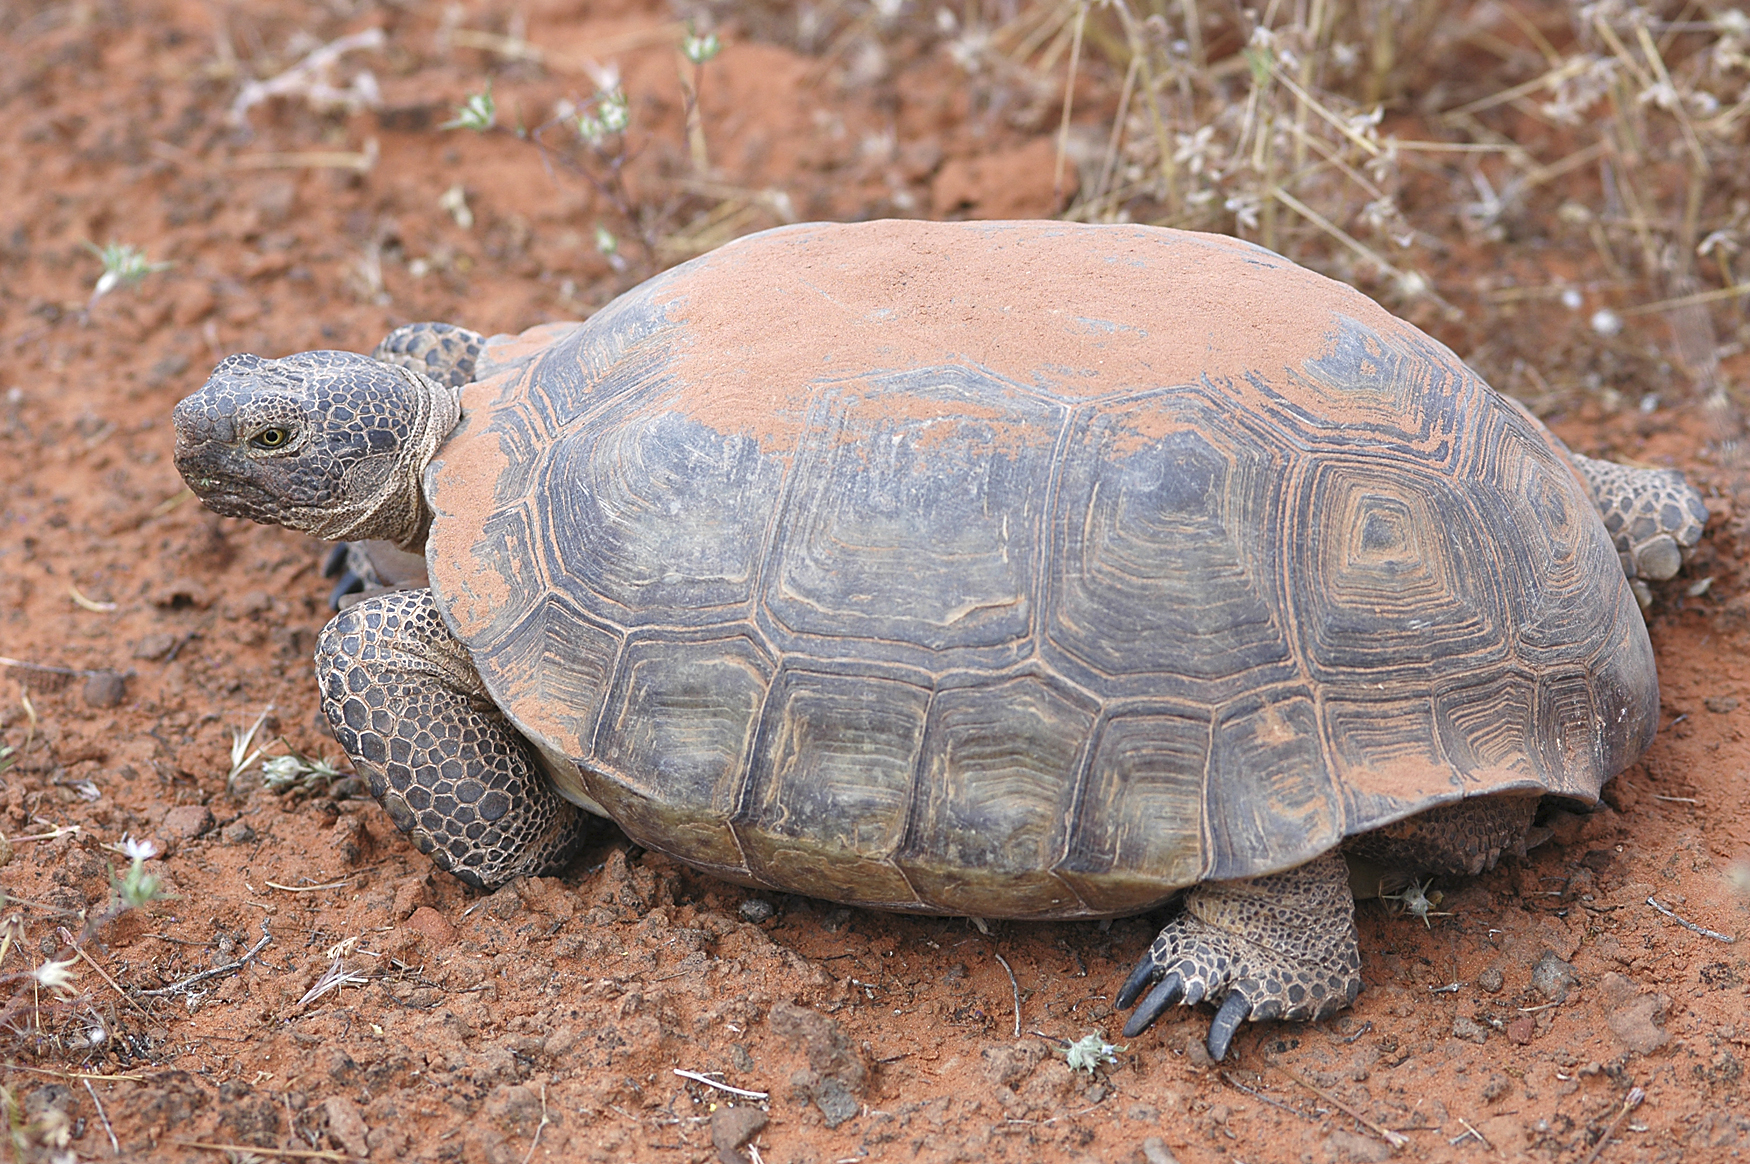 File:Desert tortoise.jpg - Wikimedia Commons